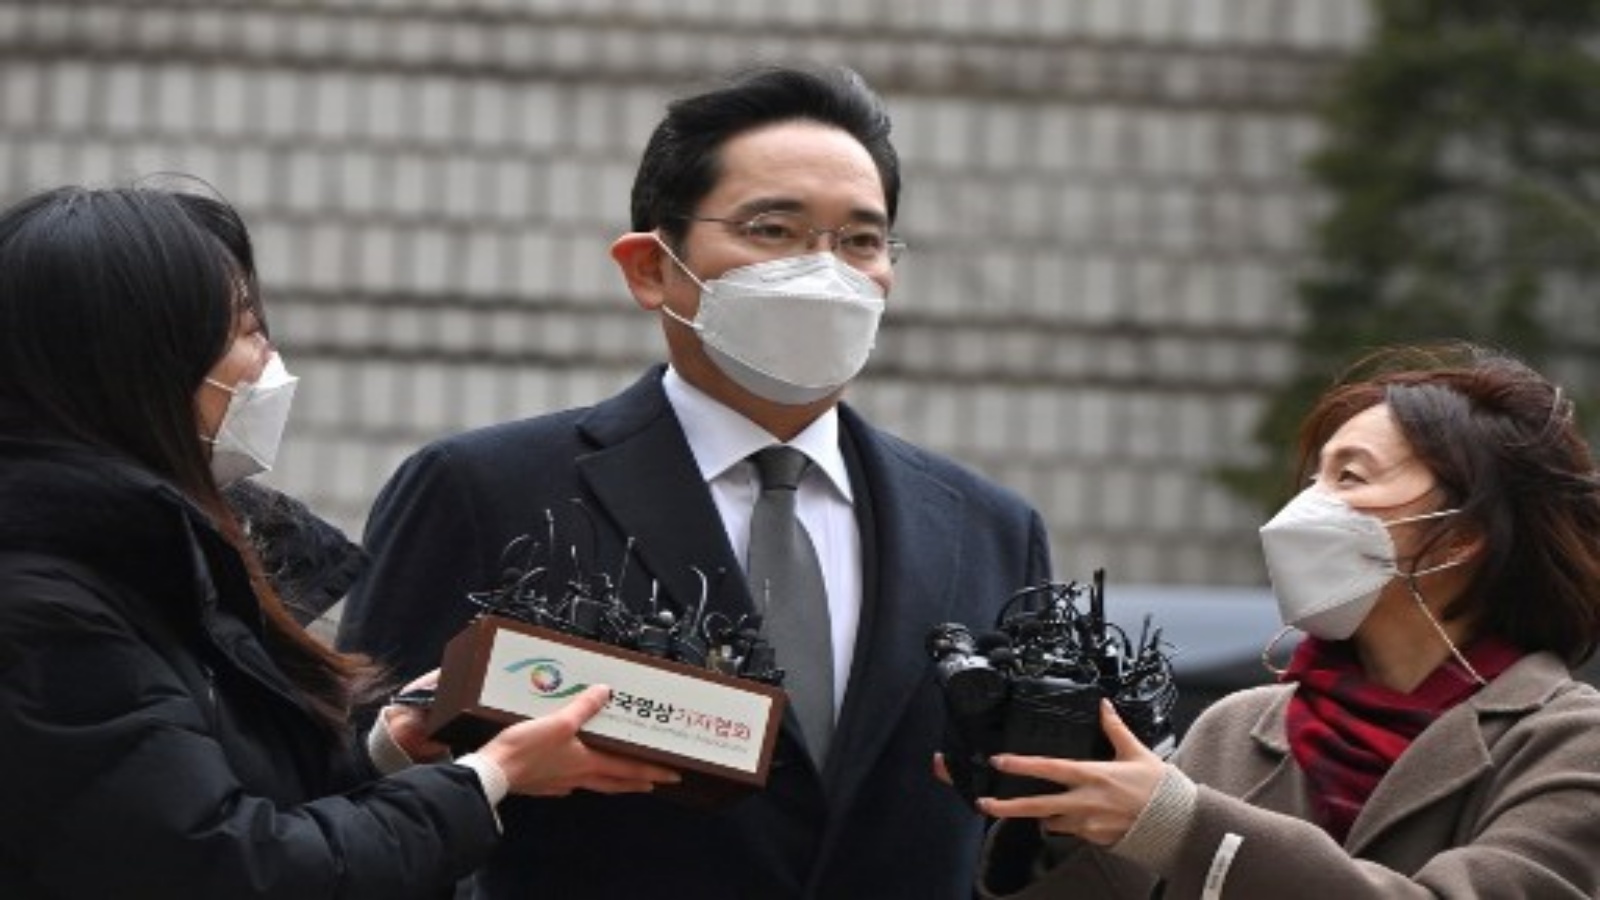 لي جاي يونغ نائب رئيس Samsung Electronics ، إلى المحكمة لمحاكمته في فضيحة الرشوة التي تتعلق بالرئيس الكوري الجنوبي السابق Park Geun-Hye في سيول في 18 يناير 2021